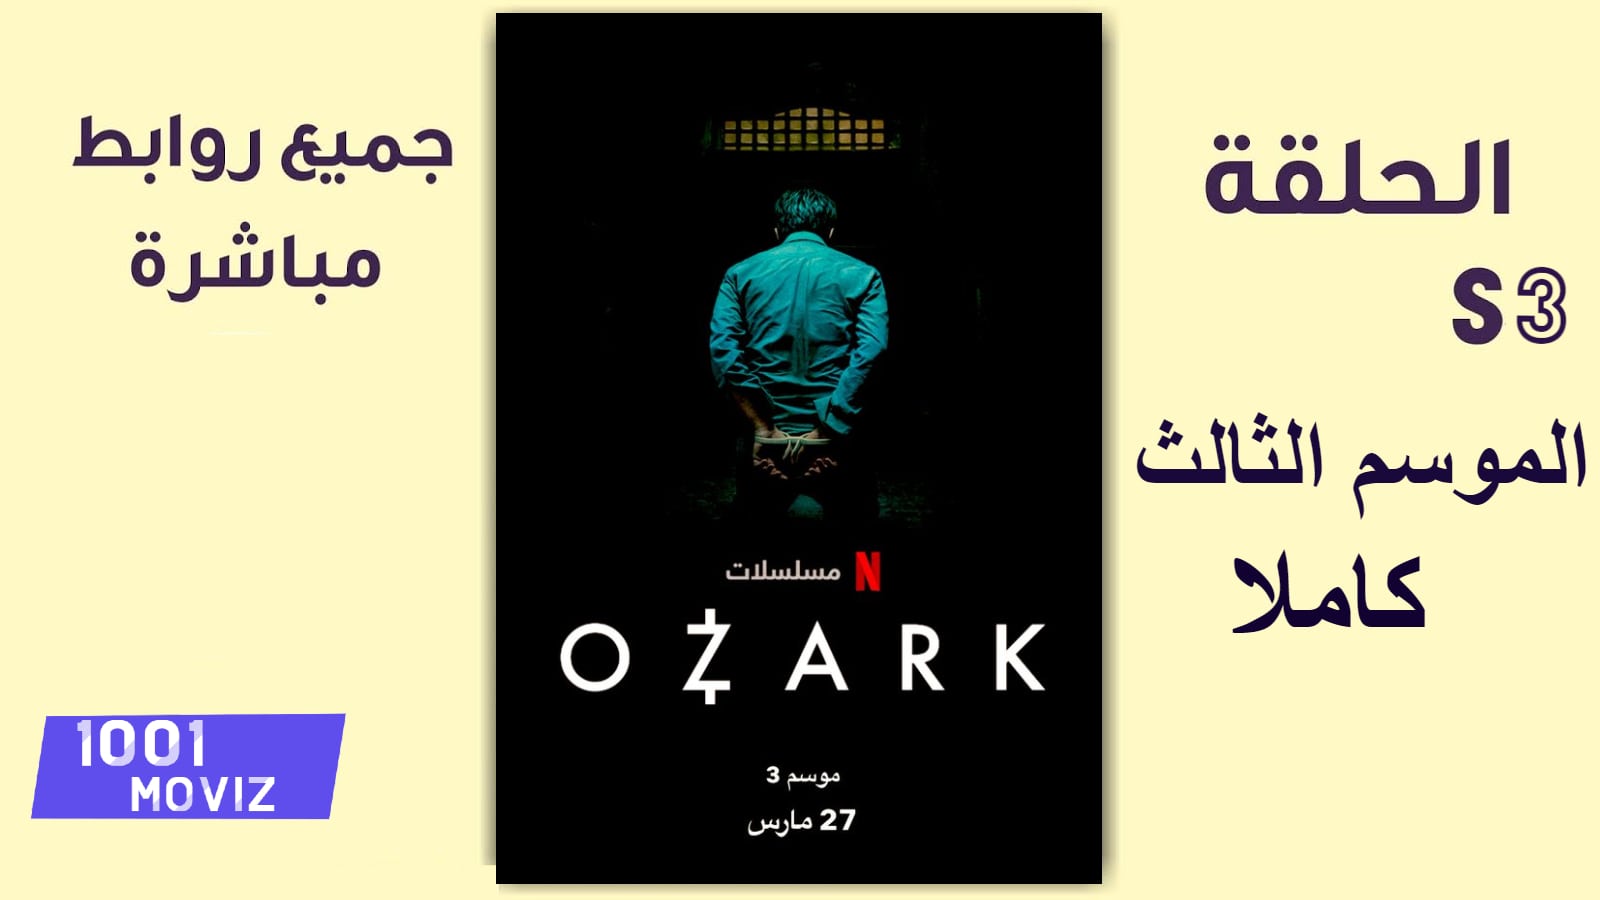 مشاهدة مسلسل Ozark الموسم الثالث كامل و مترجم اون لاين